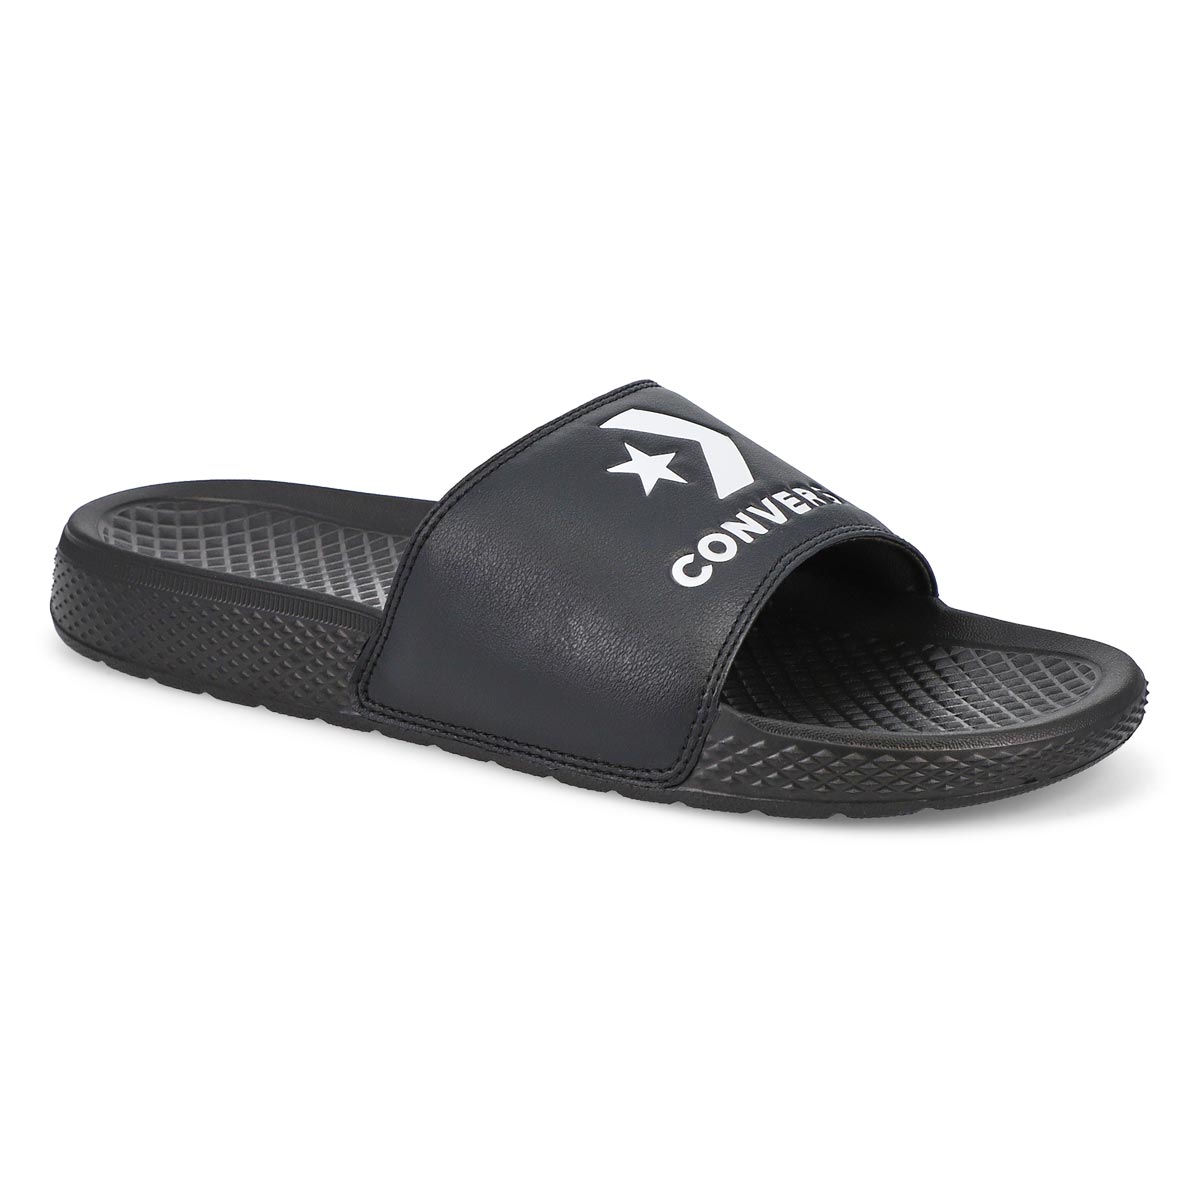 Men's All Star Casual Slide Sandal - Black/White